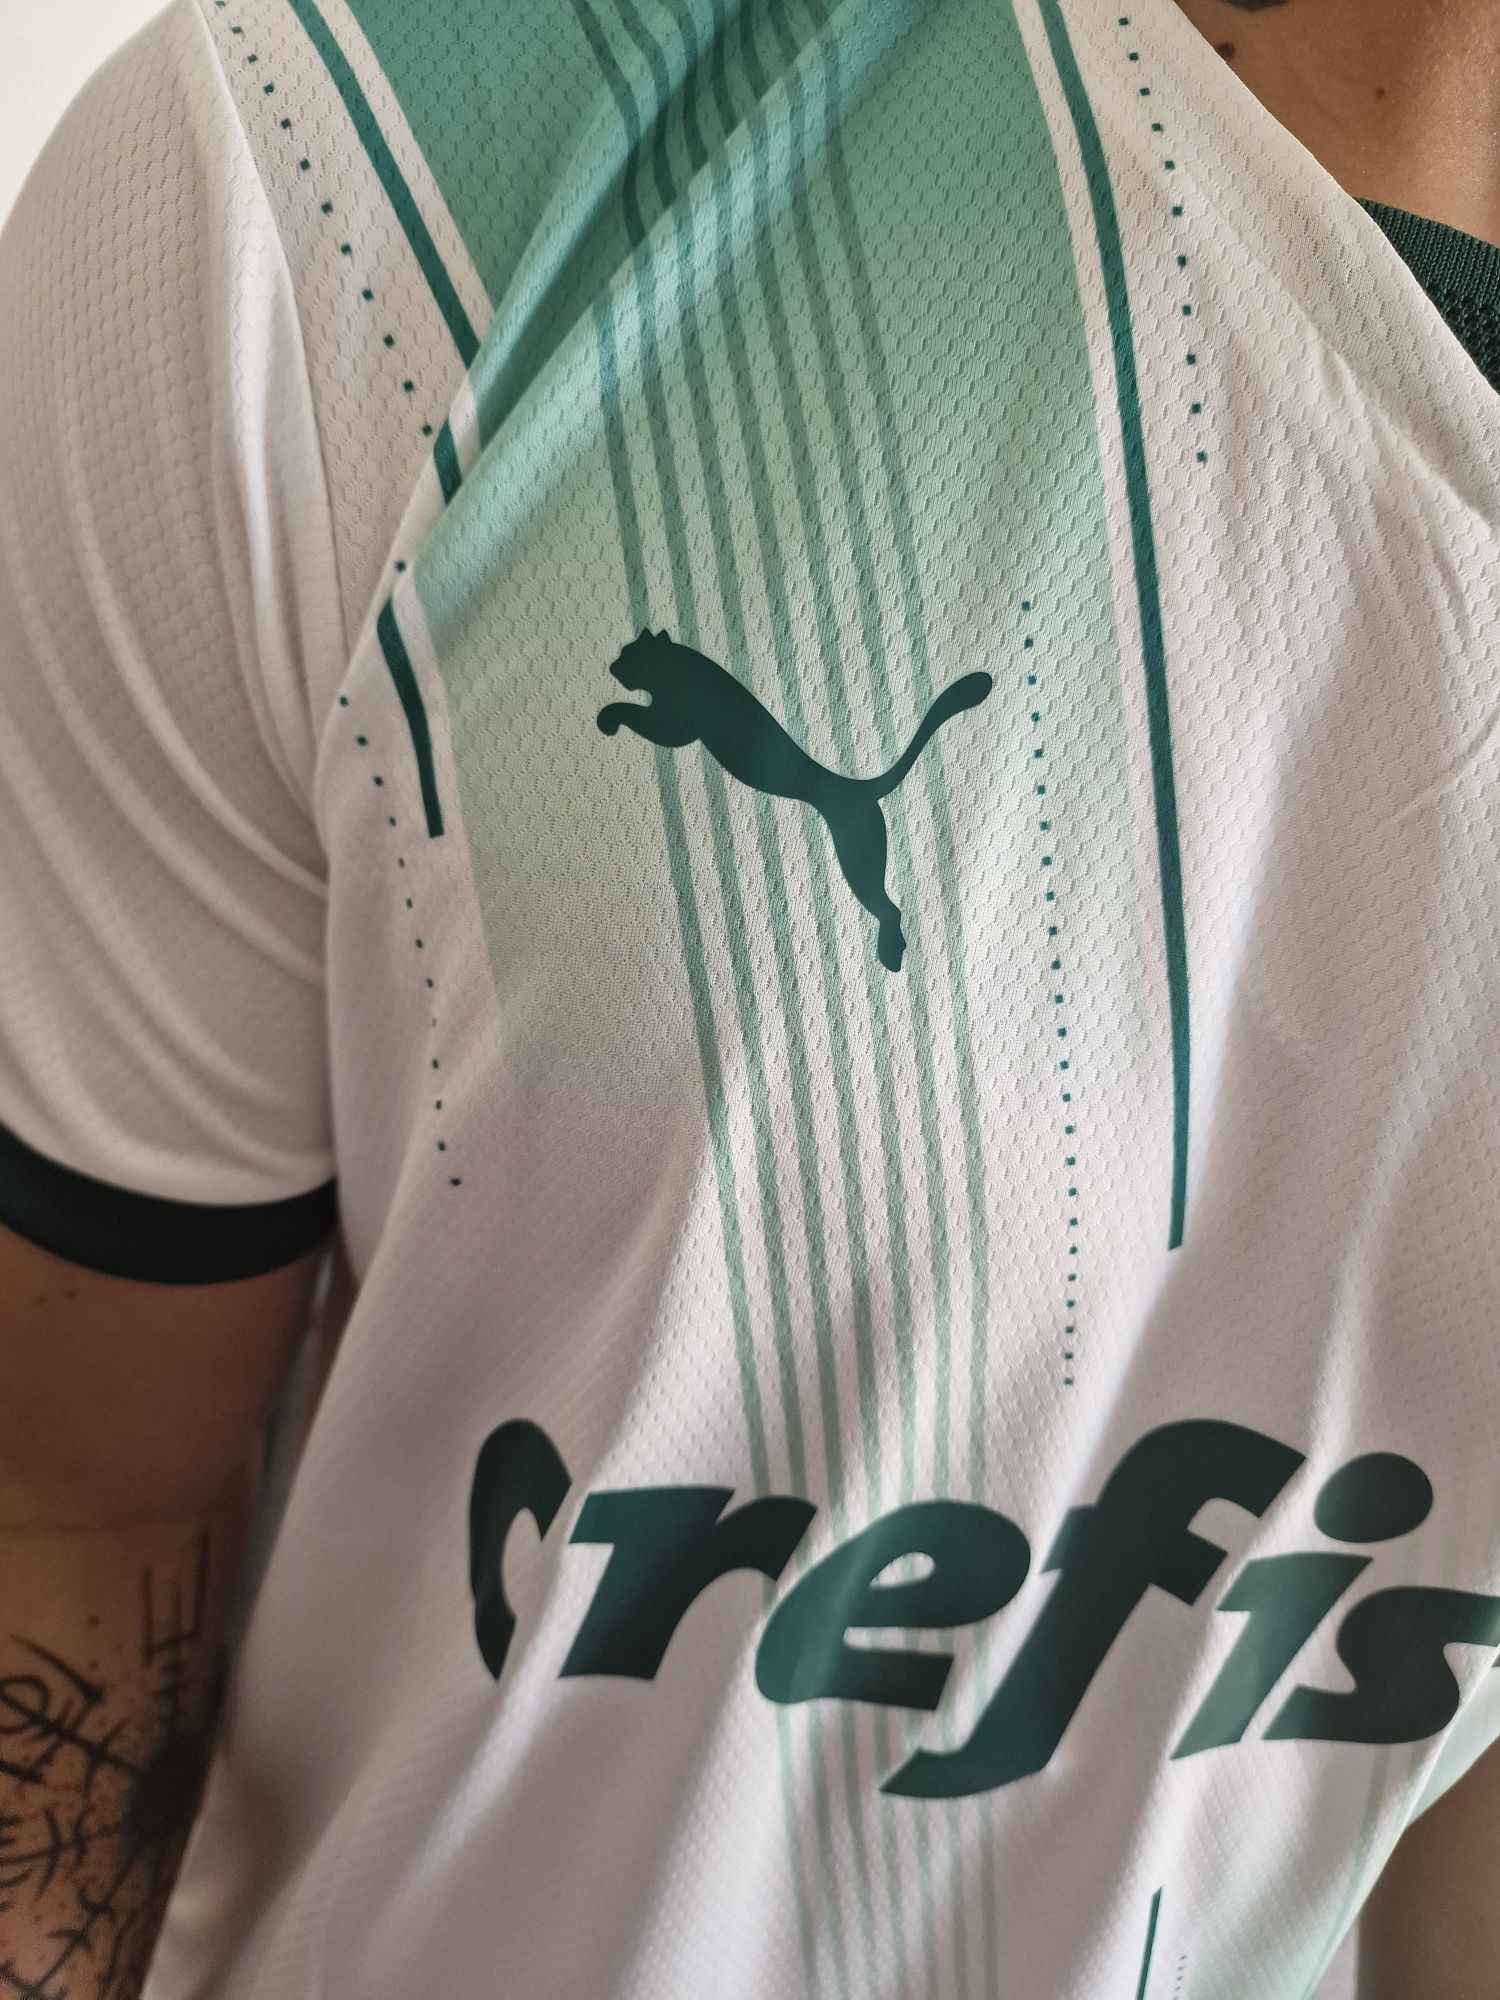 Nova Camisa do Palmeiras